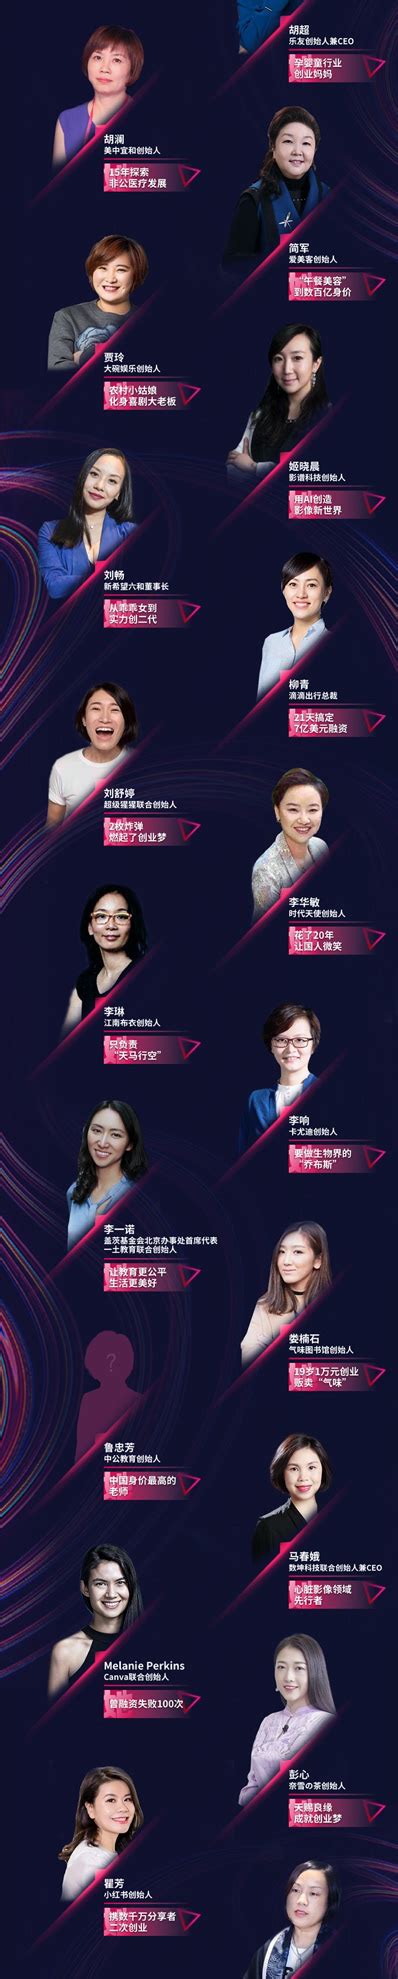 沪上阿姨创始人周蓉蓉荣列2021艾问全球创始人大会最具榜样力量女性创始人50强凤凰网海南_凤凰网